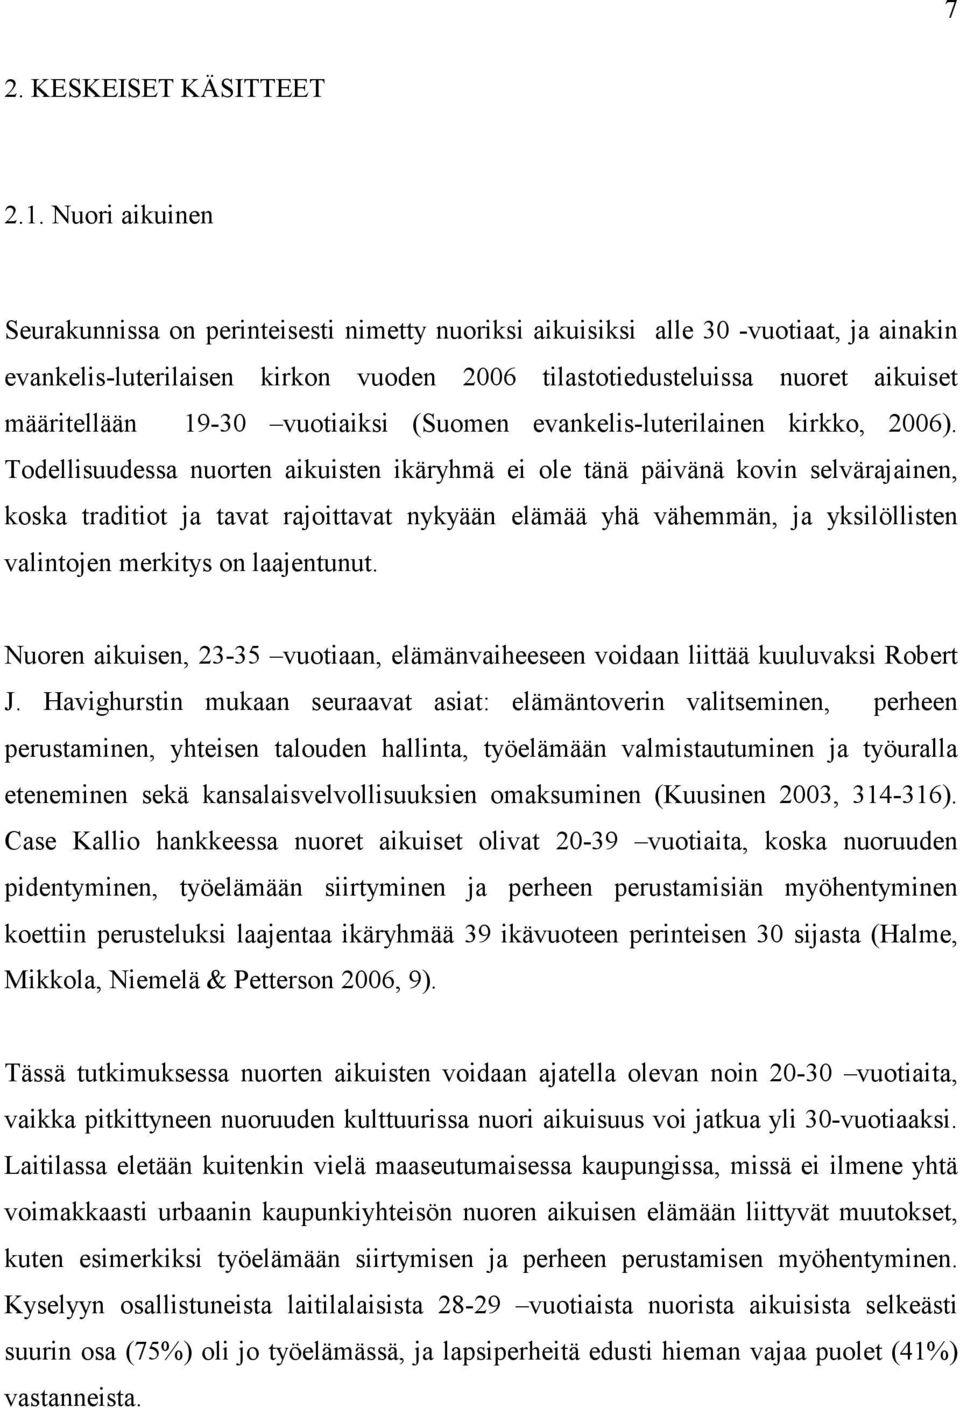 19-30 vuotiaiksi (Suomen evankelis-luterilainen kirkko, 2006).